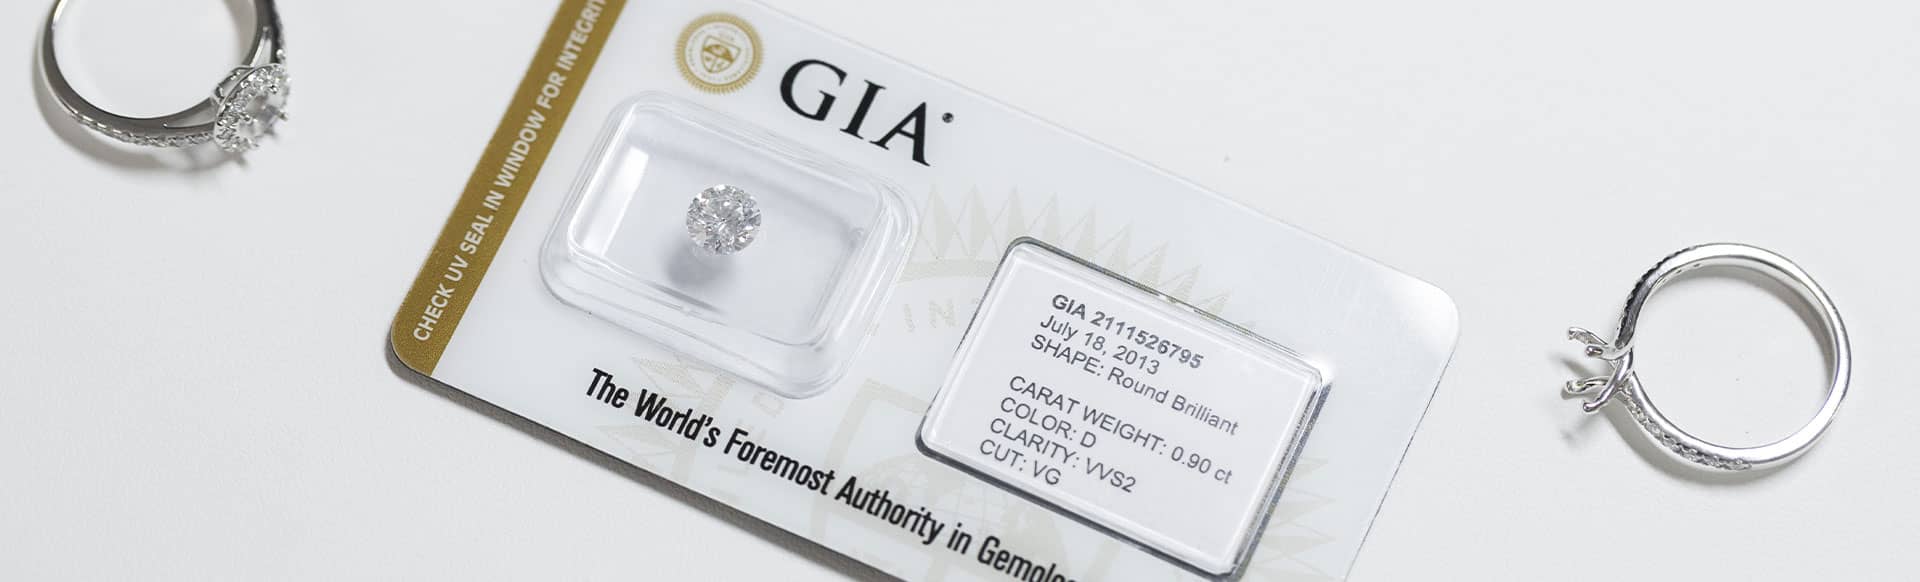 Diamanti certificati